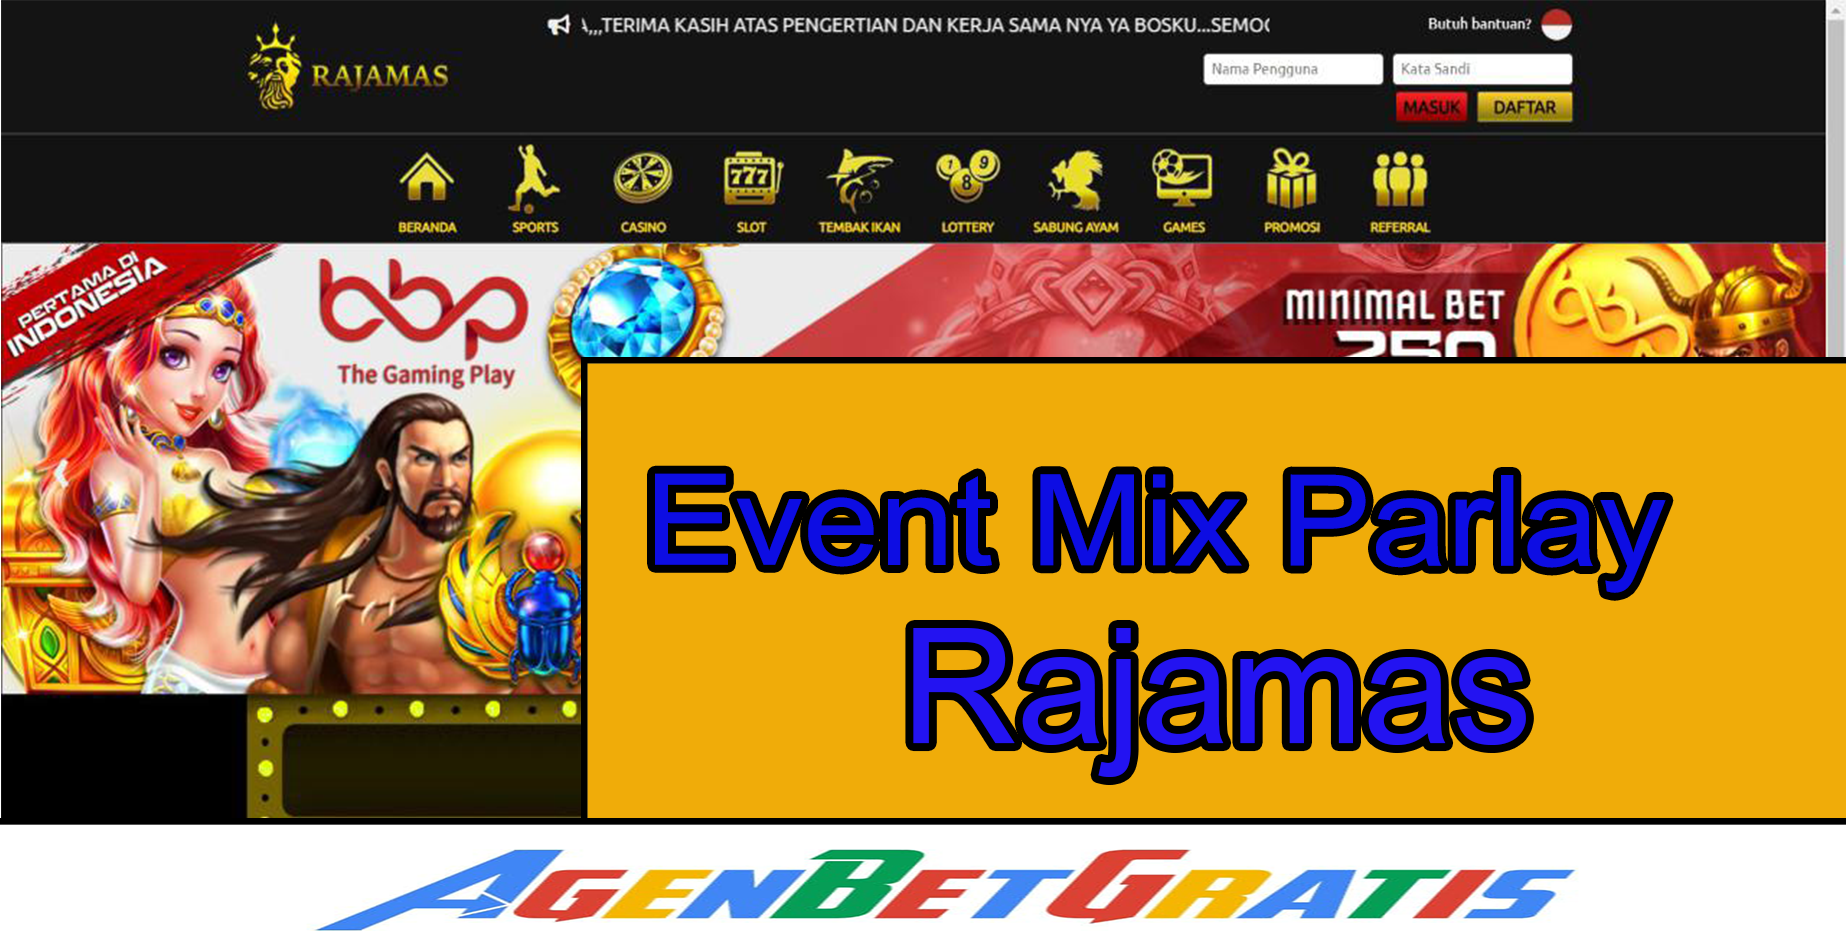 RAJAMAS - Event Mix Parlay